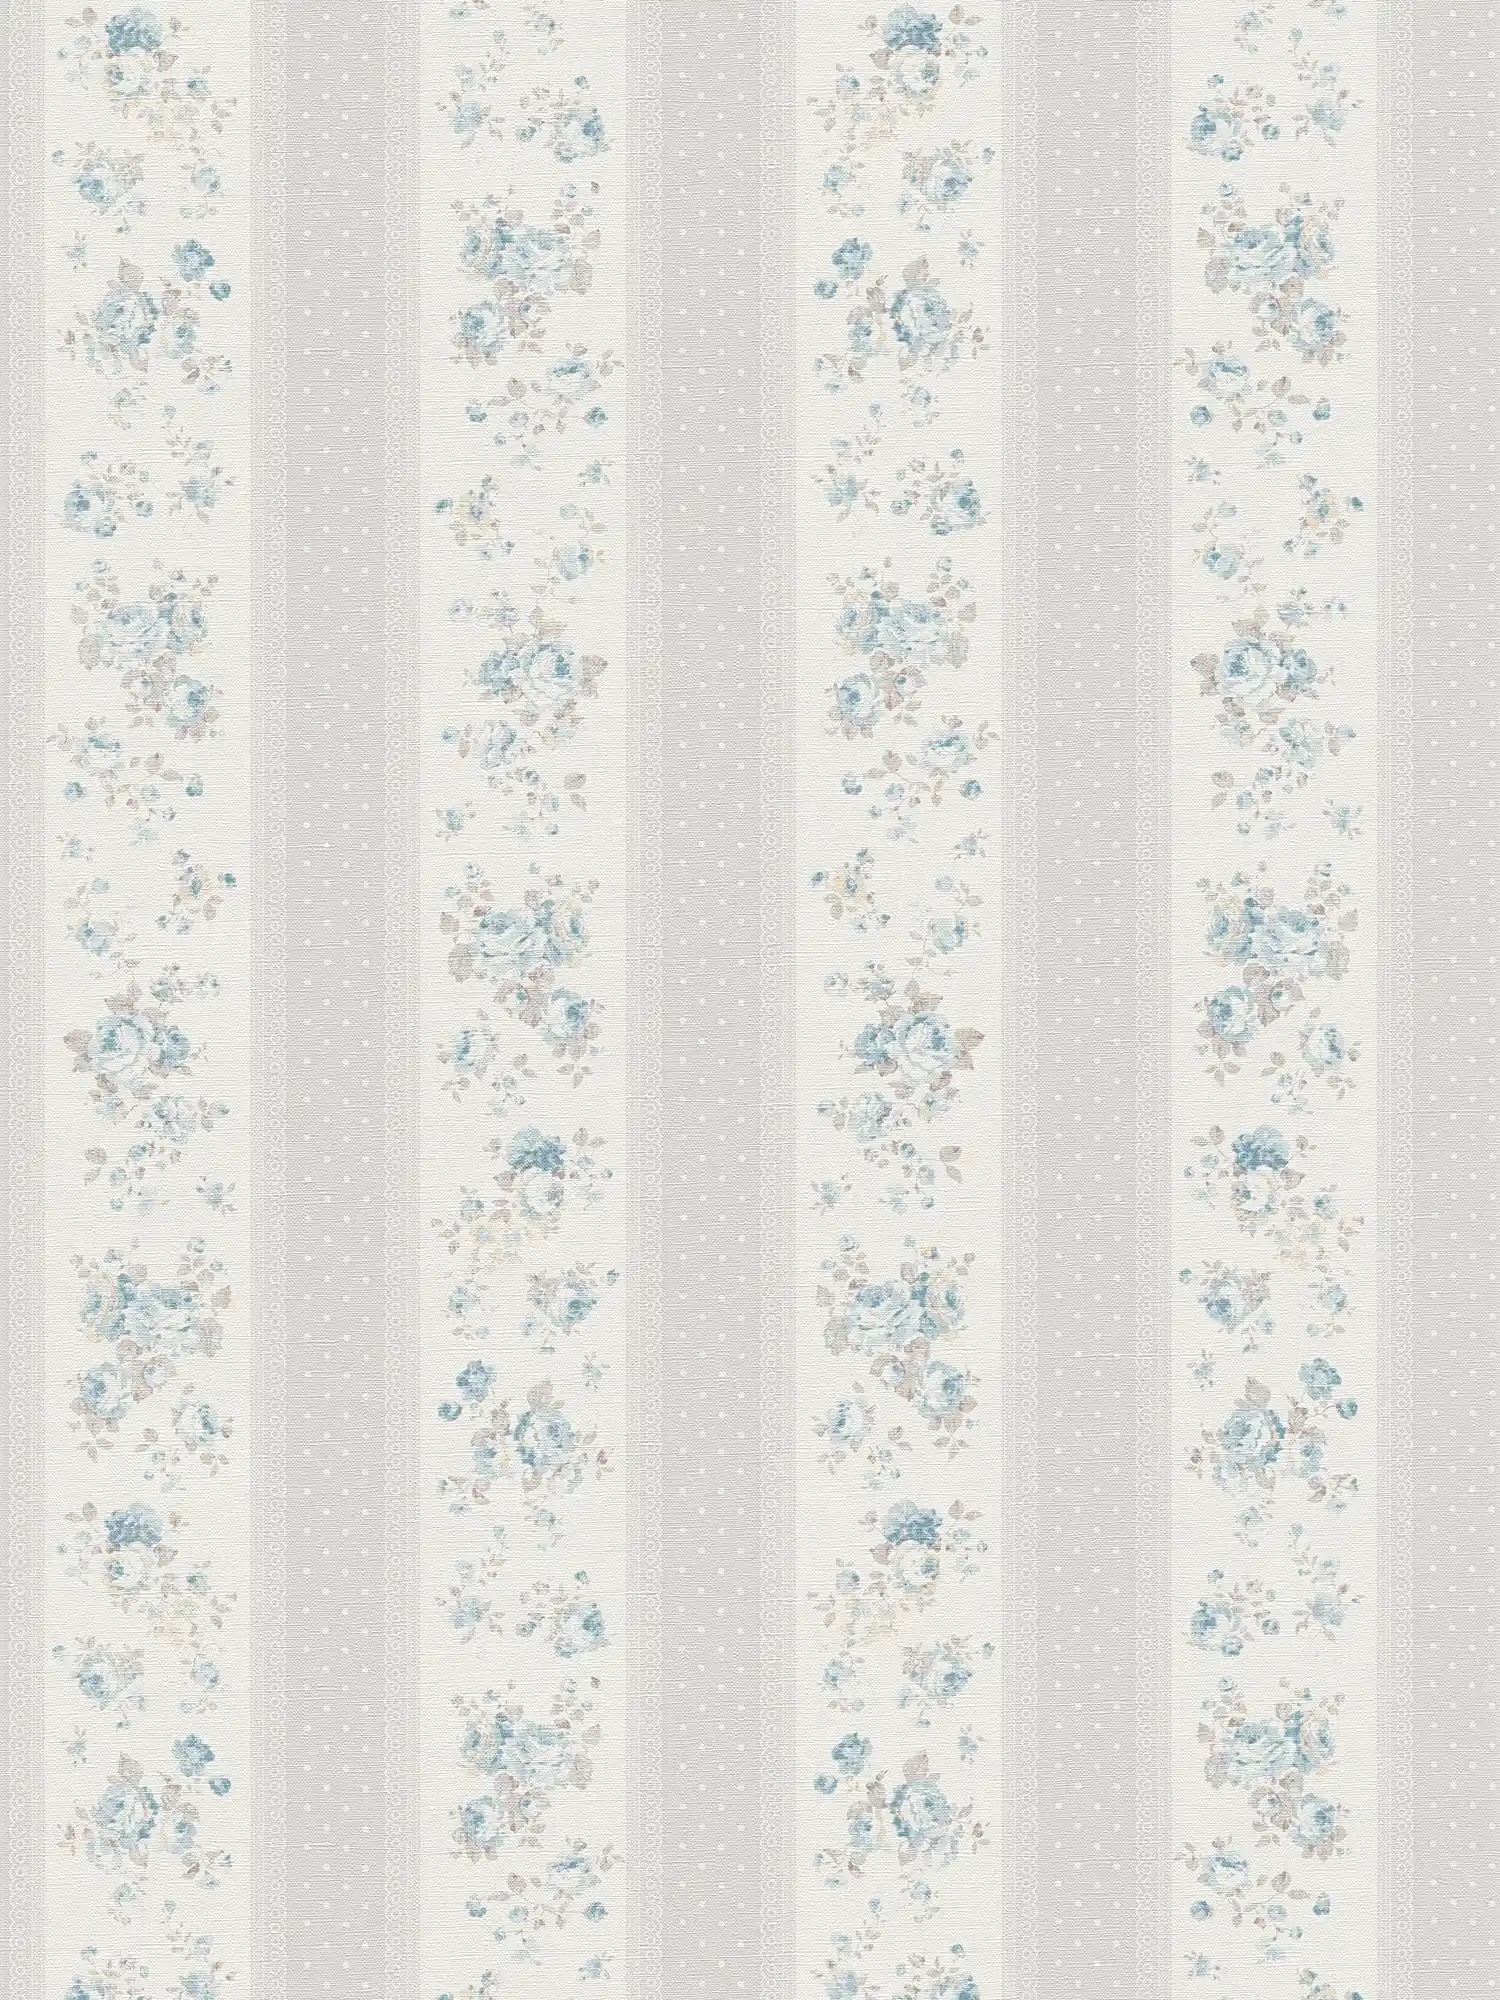 Vliesbehang met stippen en bloemenstrepen - grijs, wit, blauw
